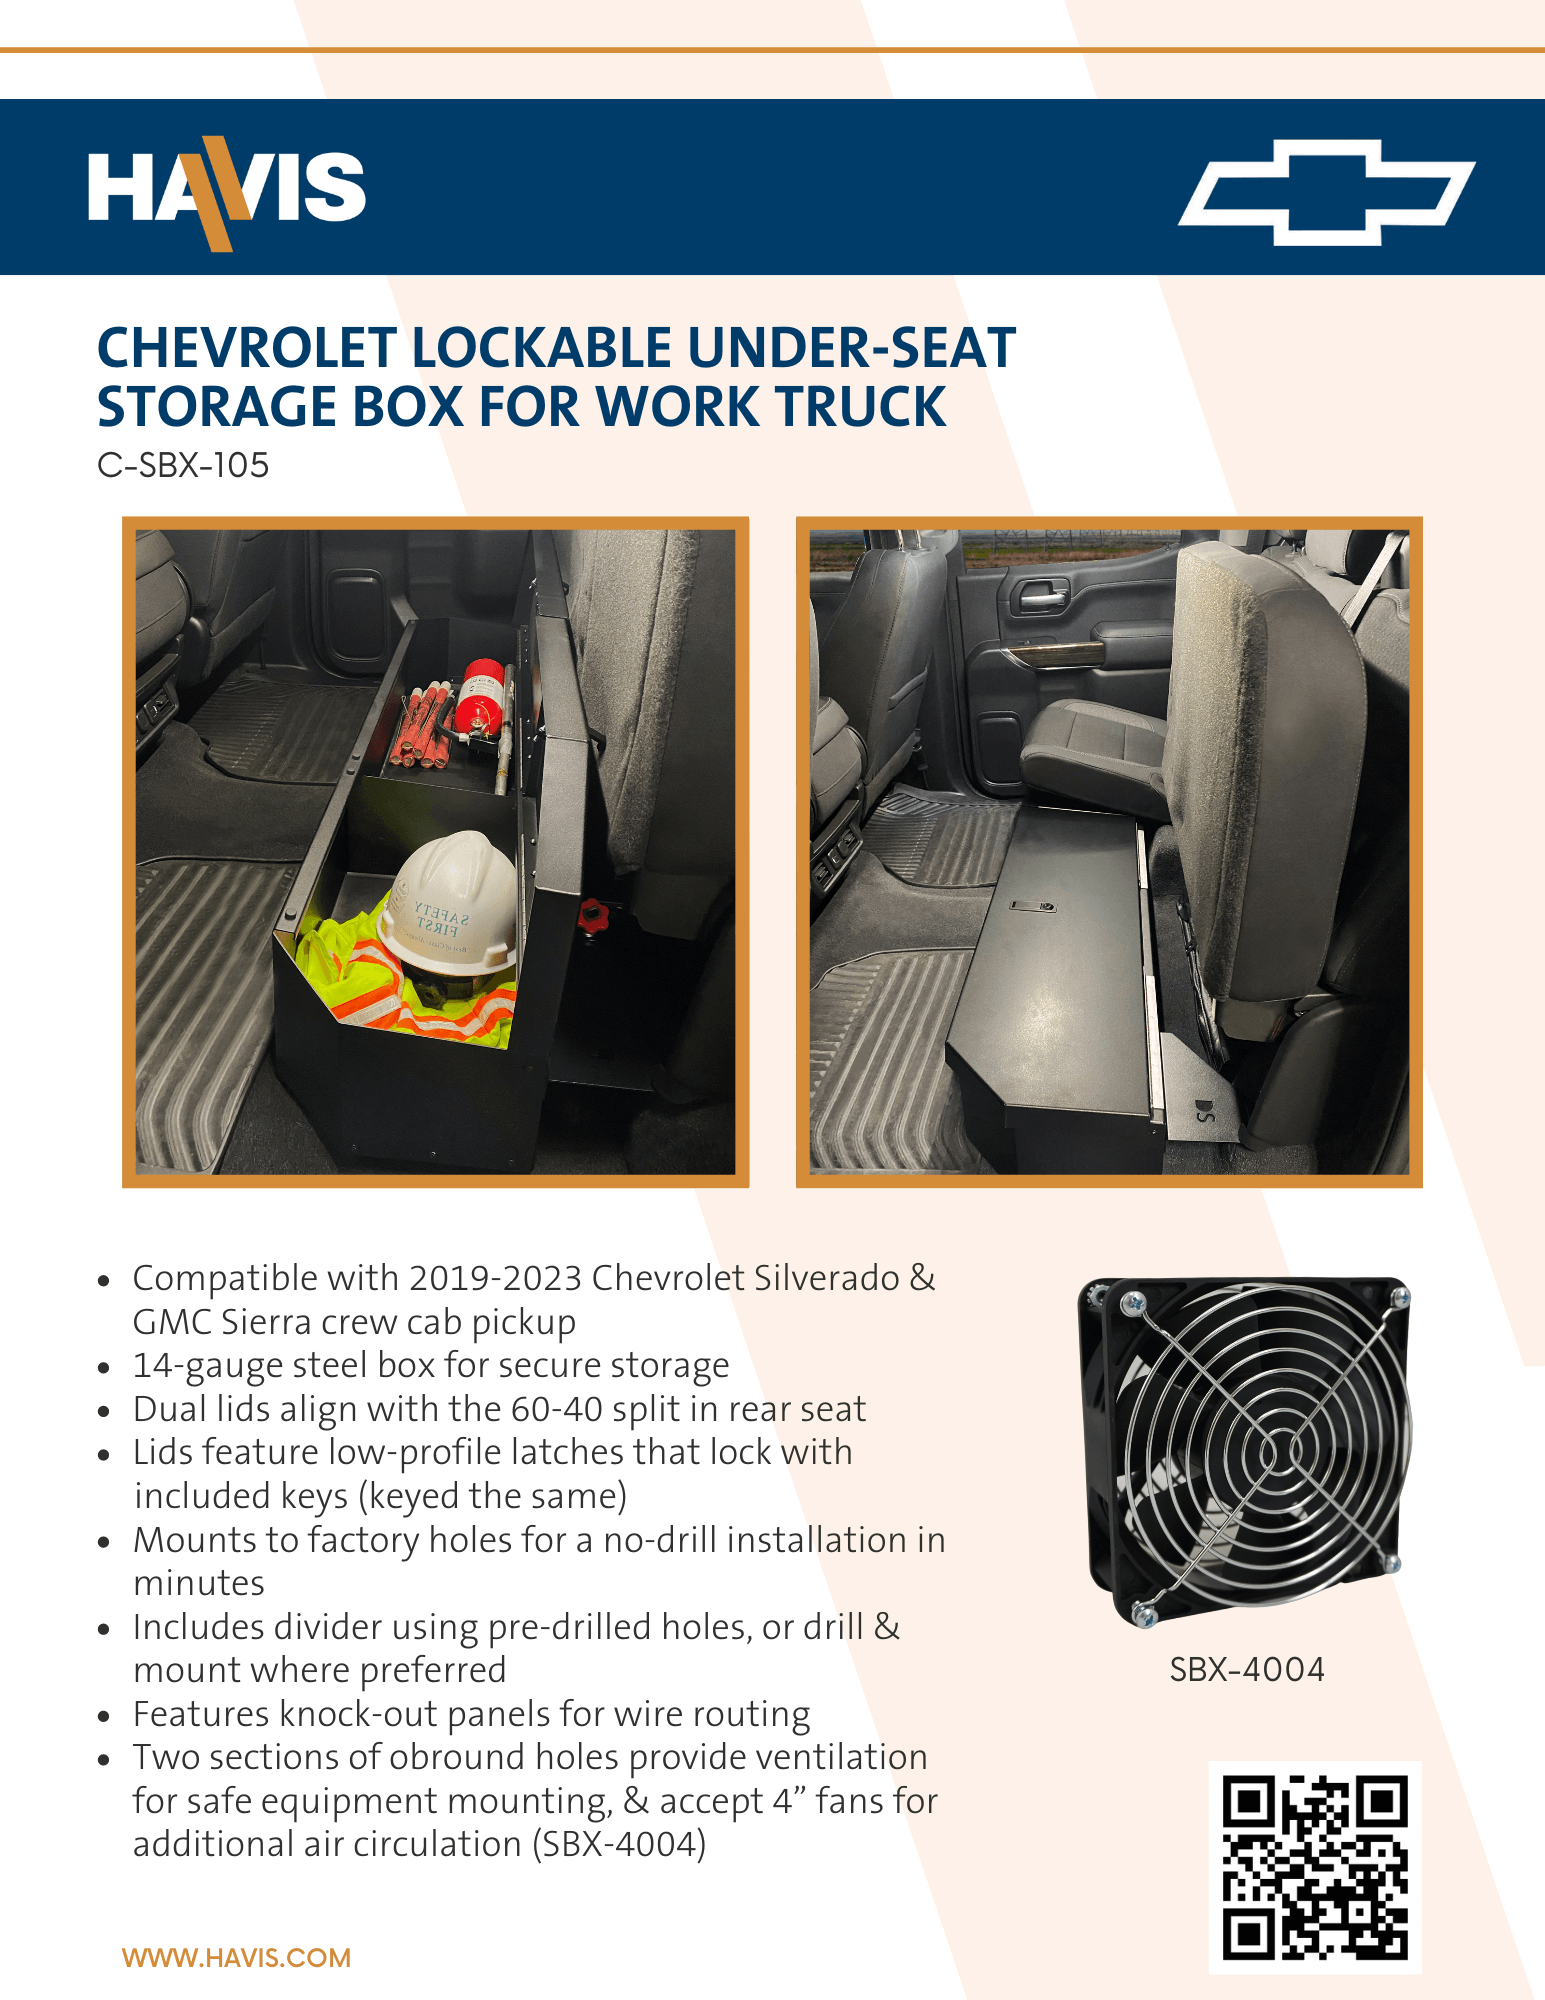 Chevrolet Lockable Under-Seat Storage Box for Work Truck Sales Sheet